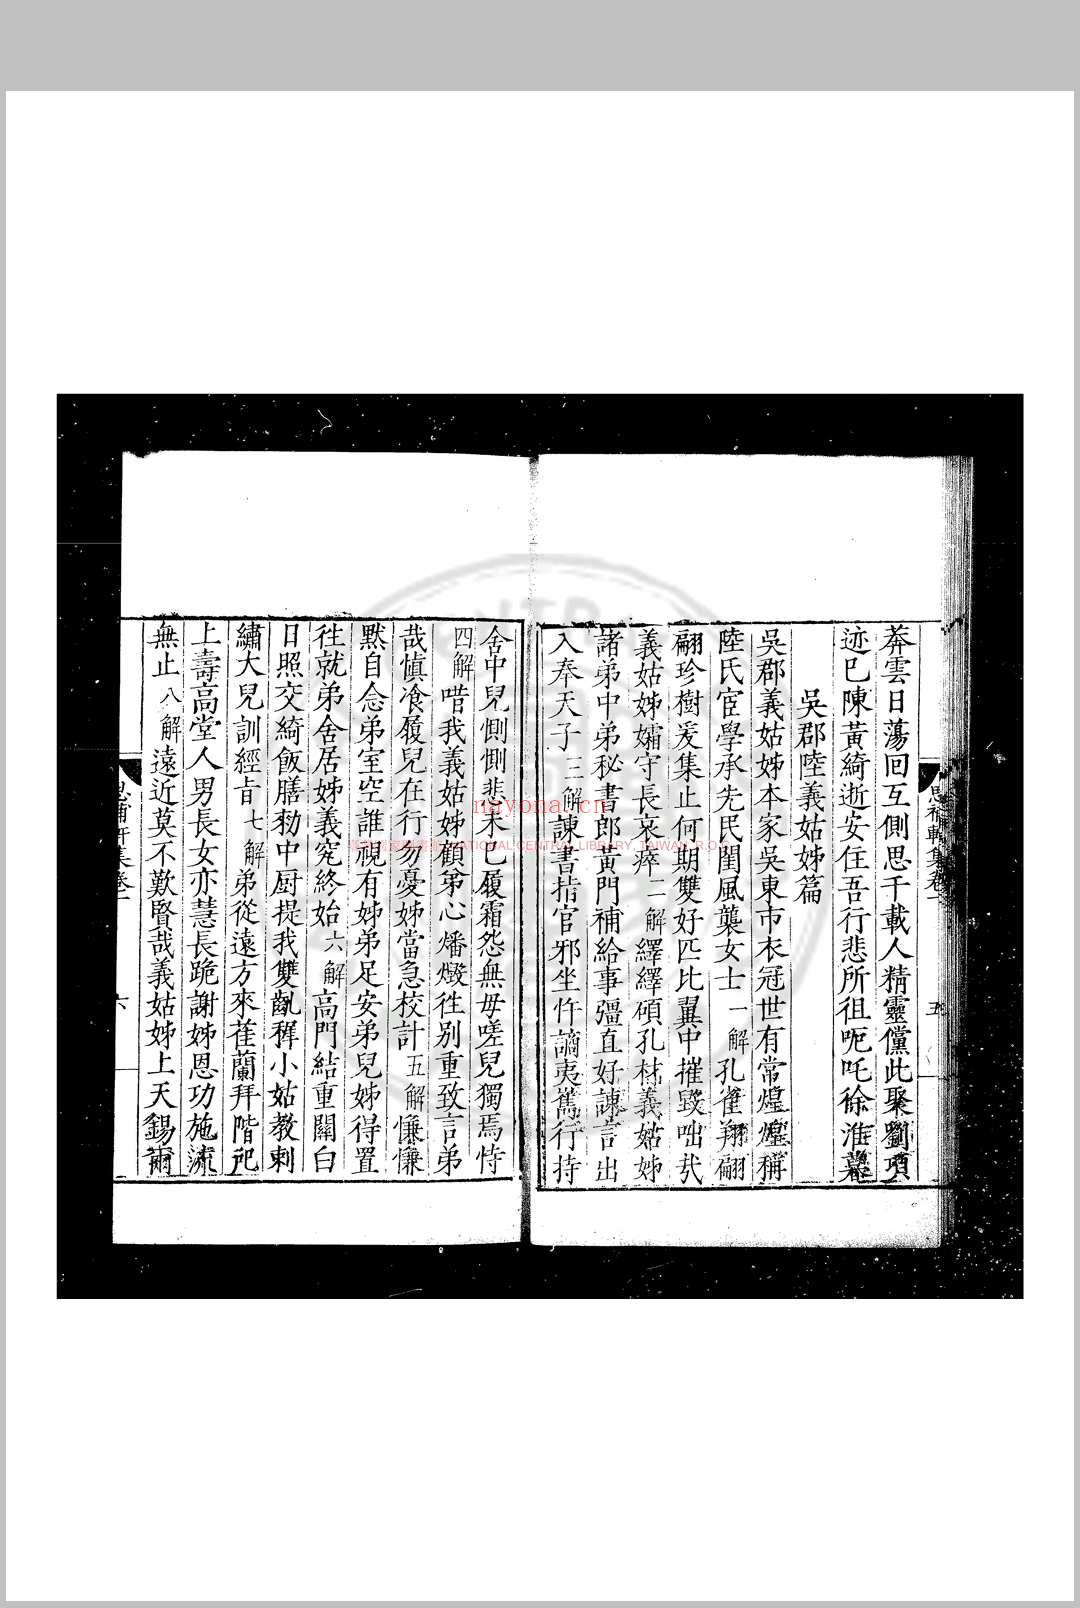 思补轩漫集 (明)尹台撰 明嘉靖辛酉(四十年, 1561)甫田林润刊本